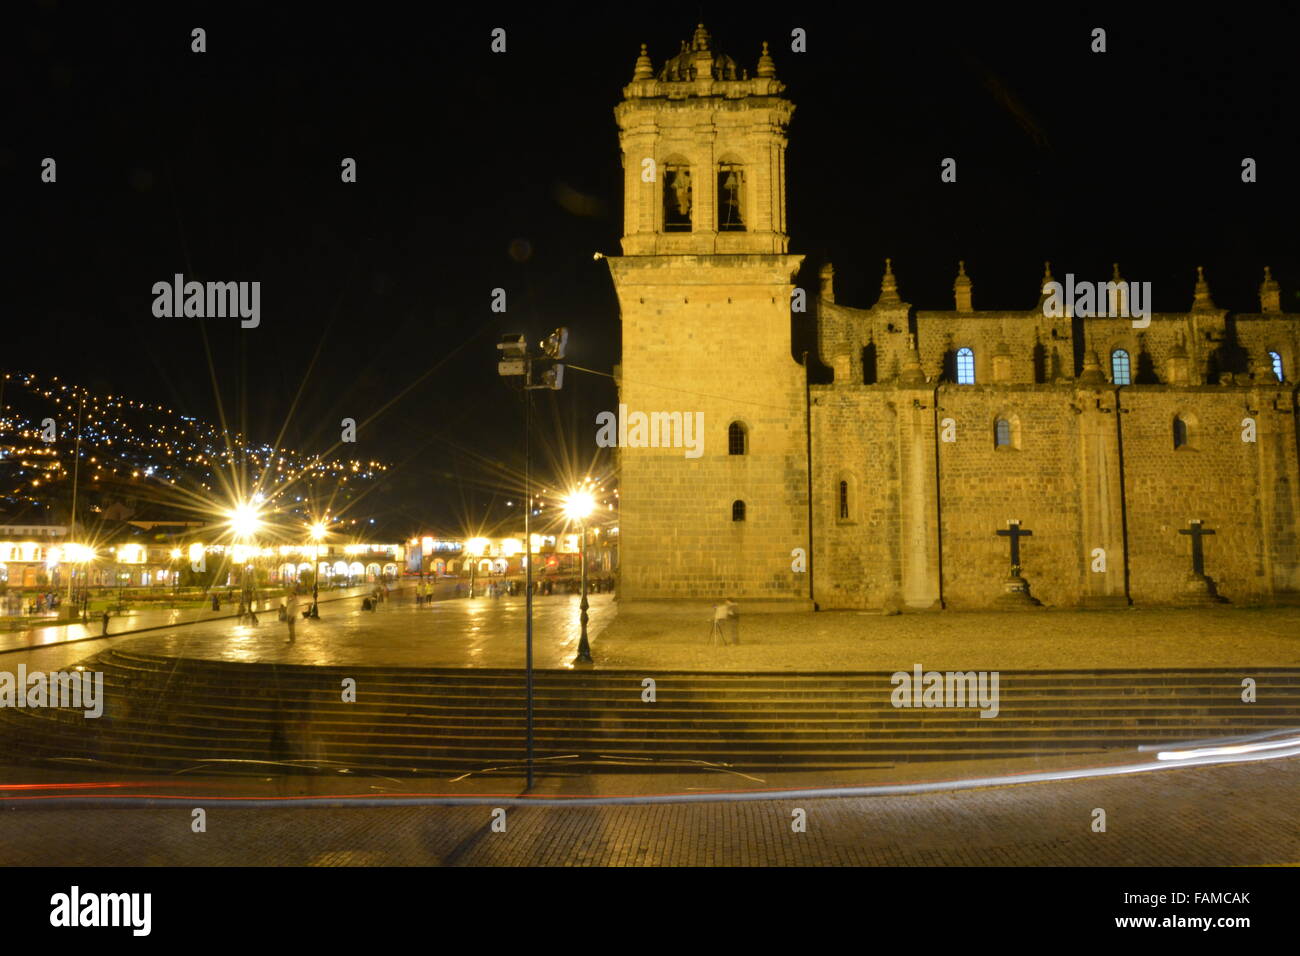 La Catedral, la cathédrale, qui donne sur la Plaza de Armas de nuit dans la ville de Cusco, Pérou Banque D'Images